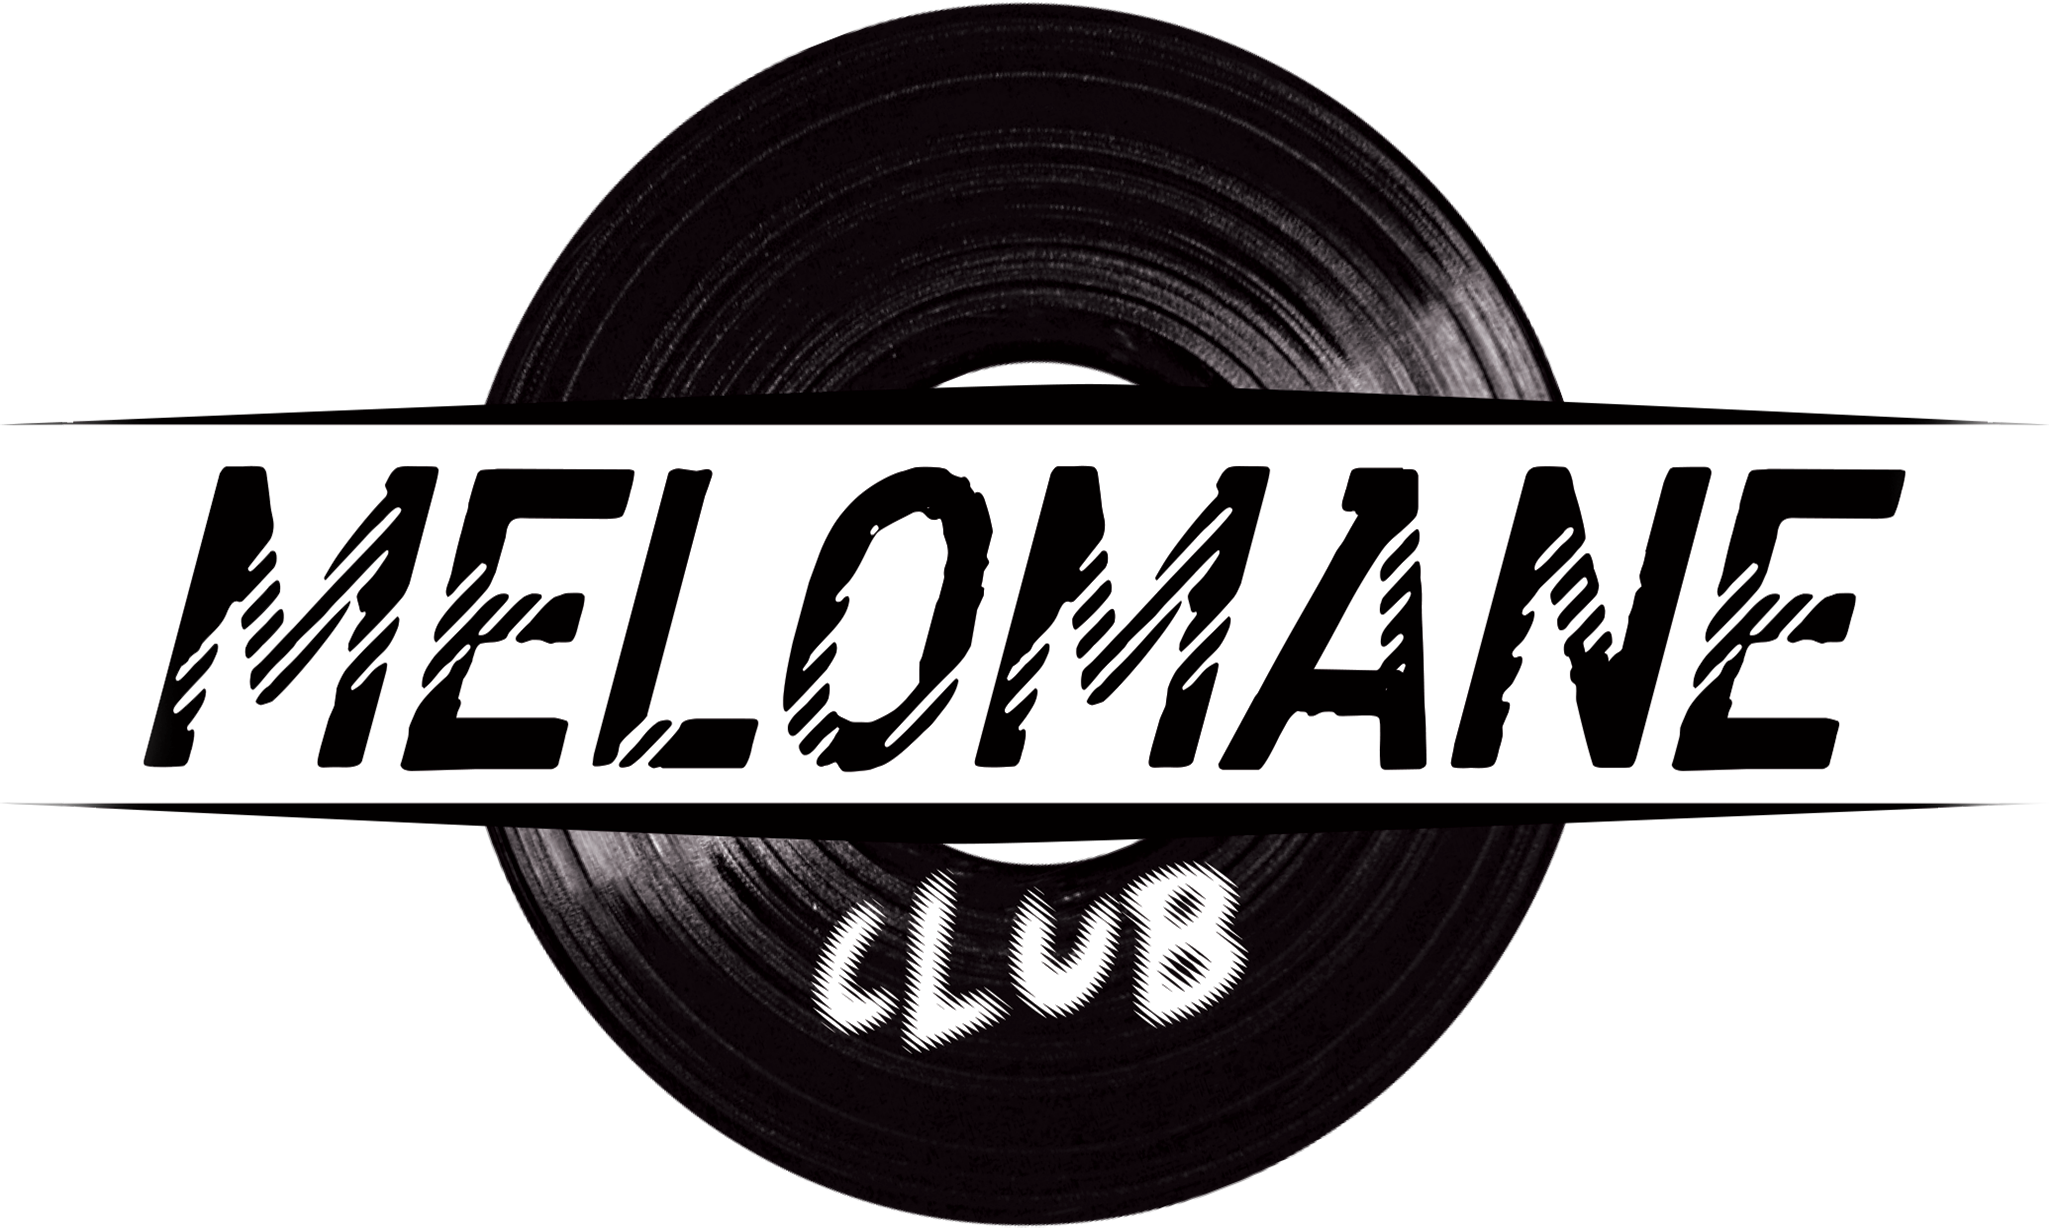 Mélomane Club